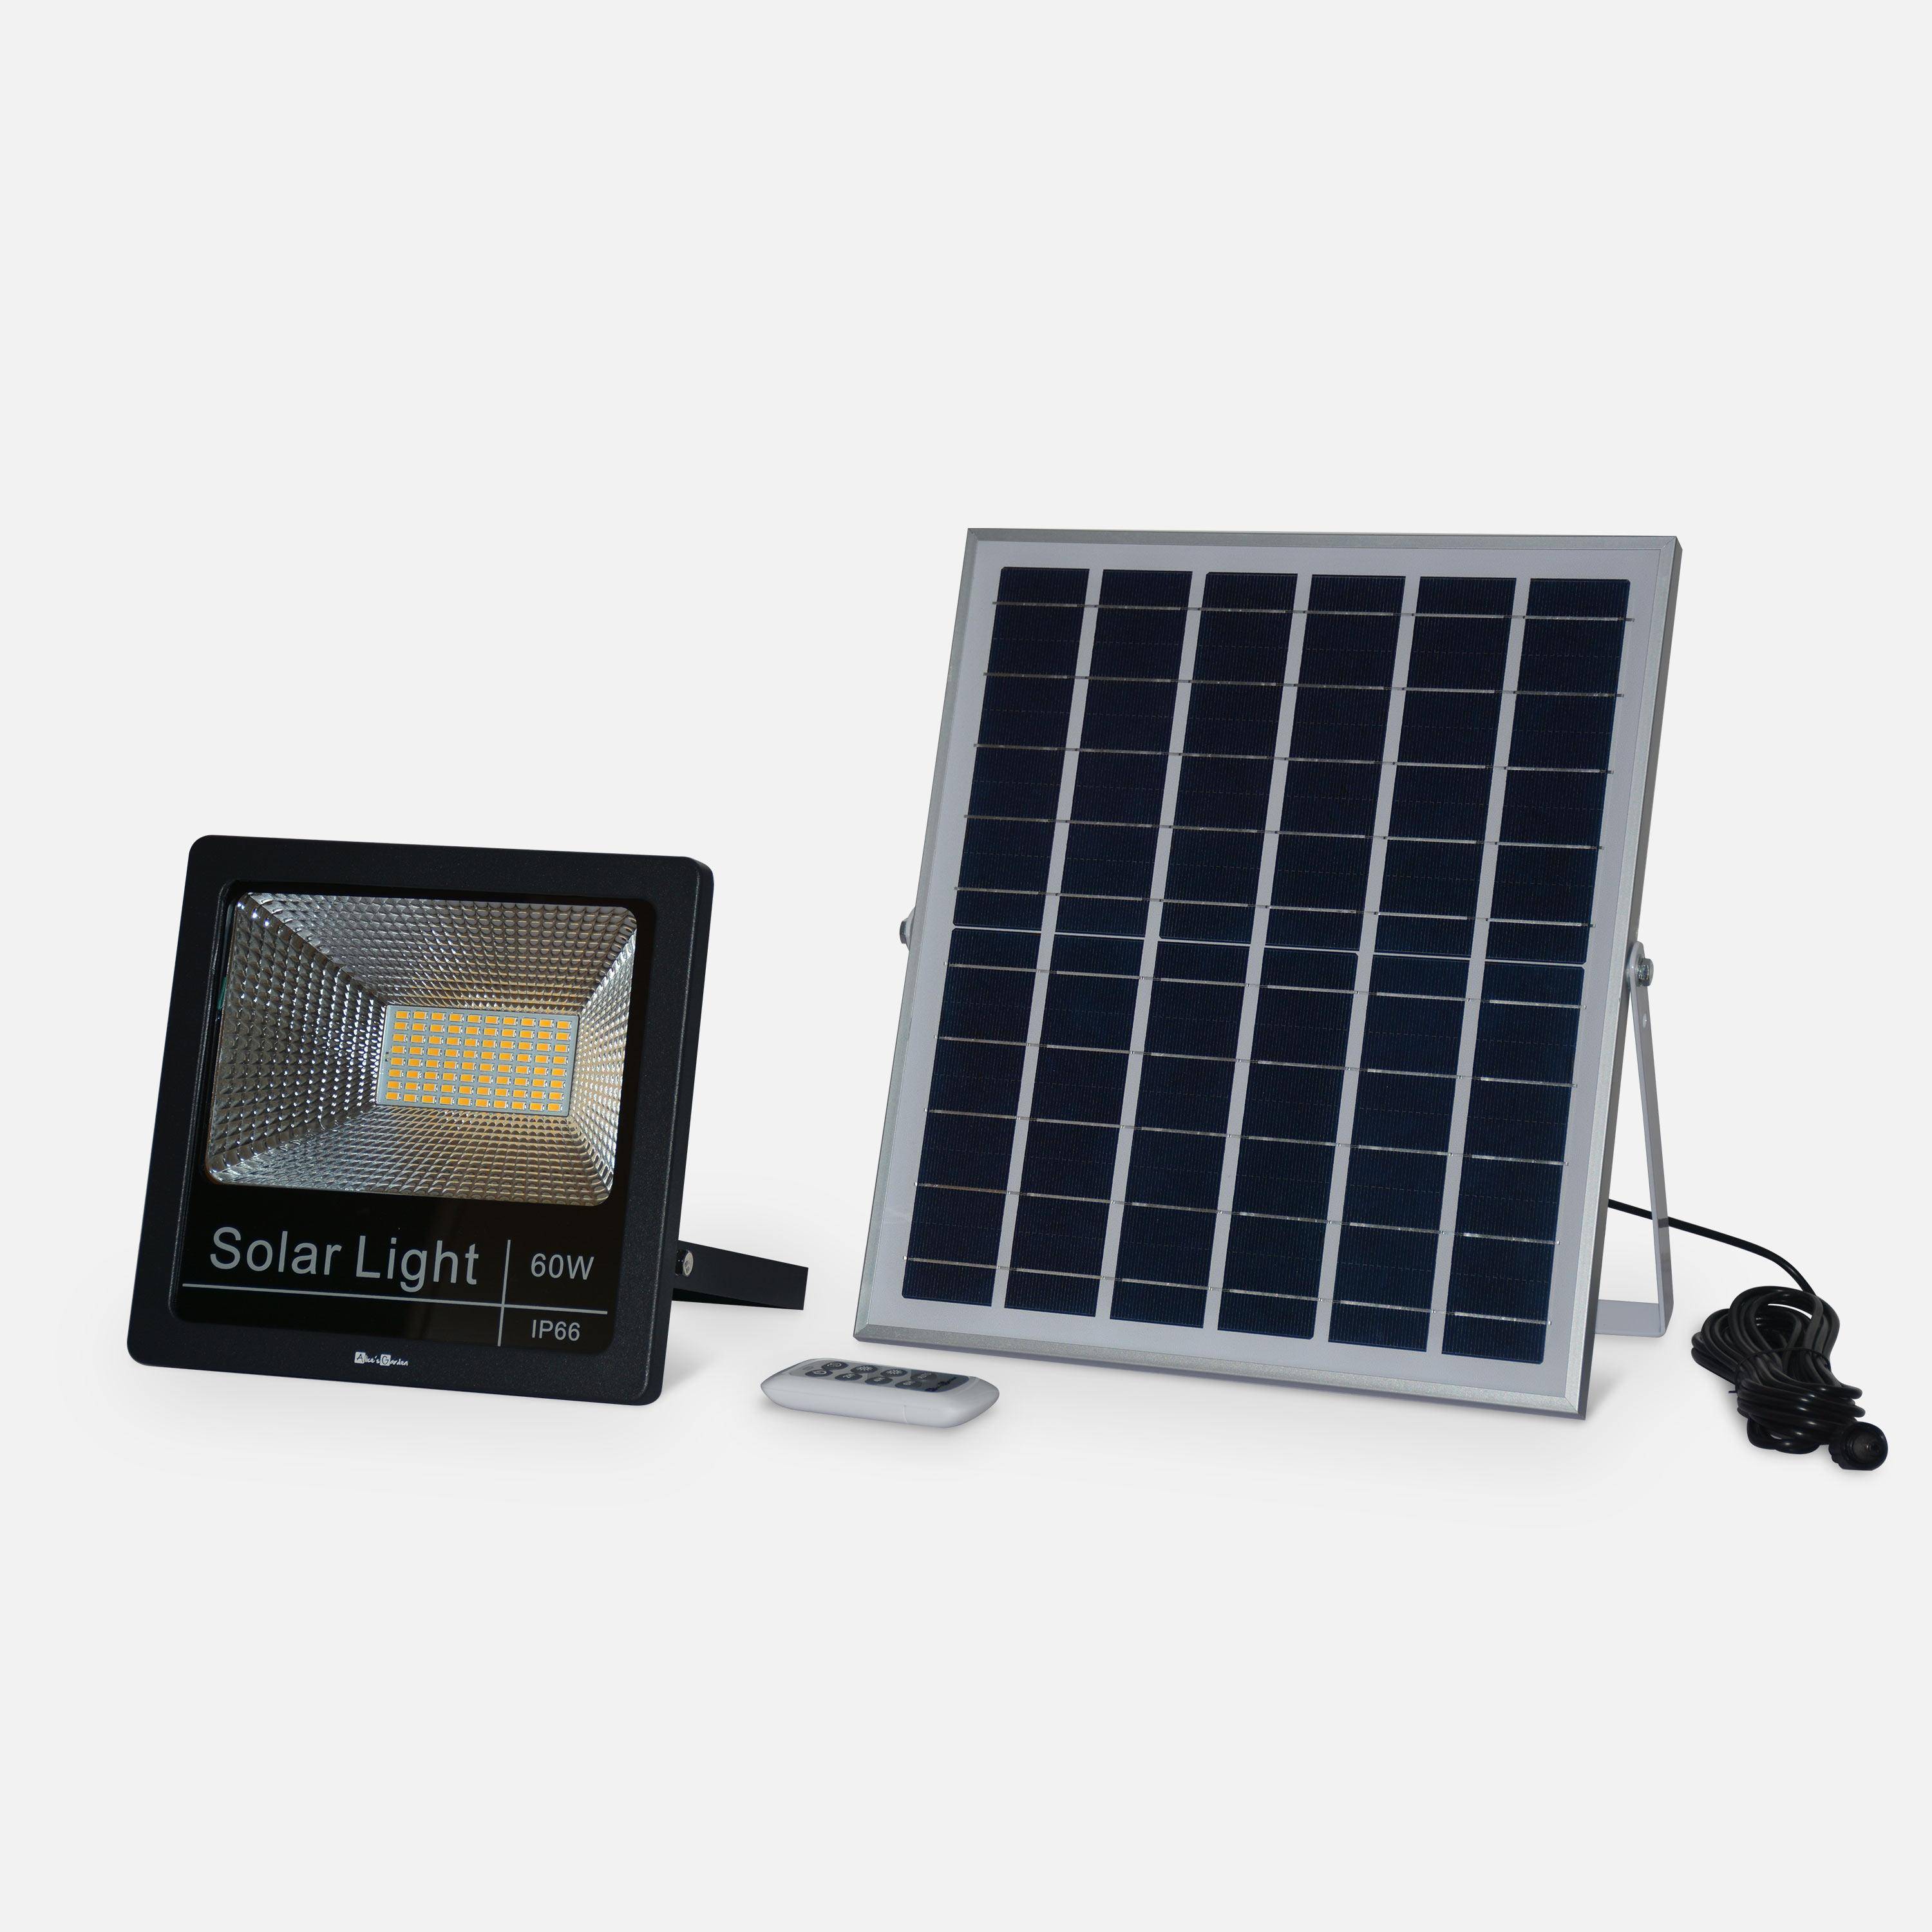 Projecteur solaire LED 40W avec panneau solaire télécommandé blanc chaud, lampe résistante à la pluie et autonome, spot extra puissant 1500 lumens équivalent 125W Photo1